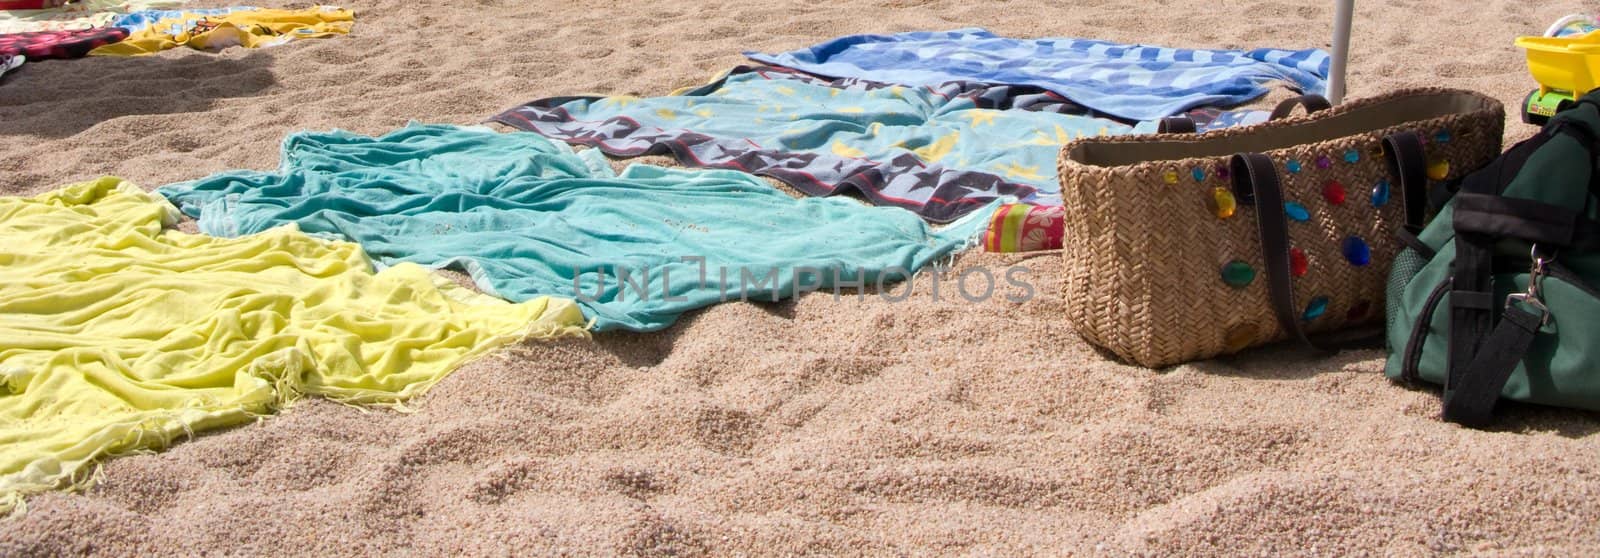 Towels in the beach by olgaolga